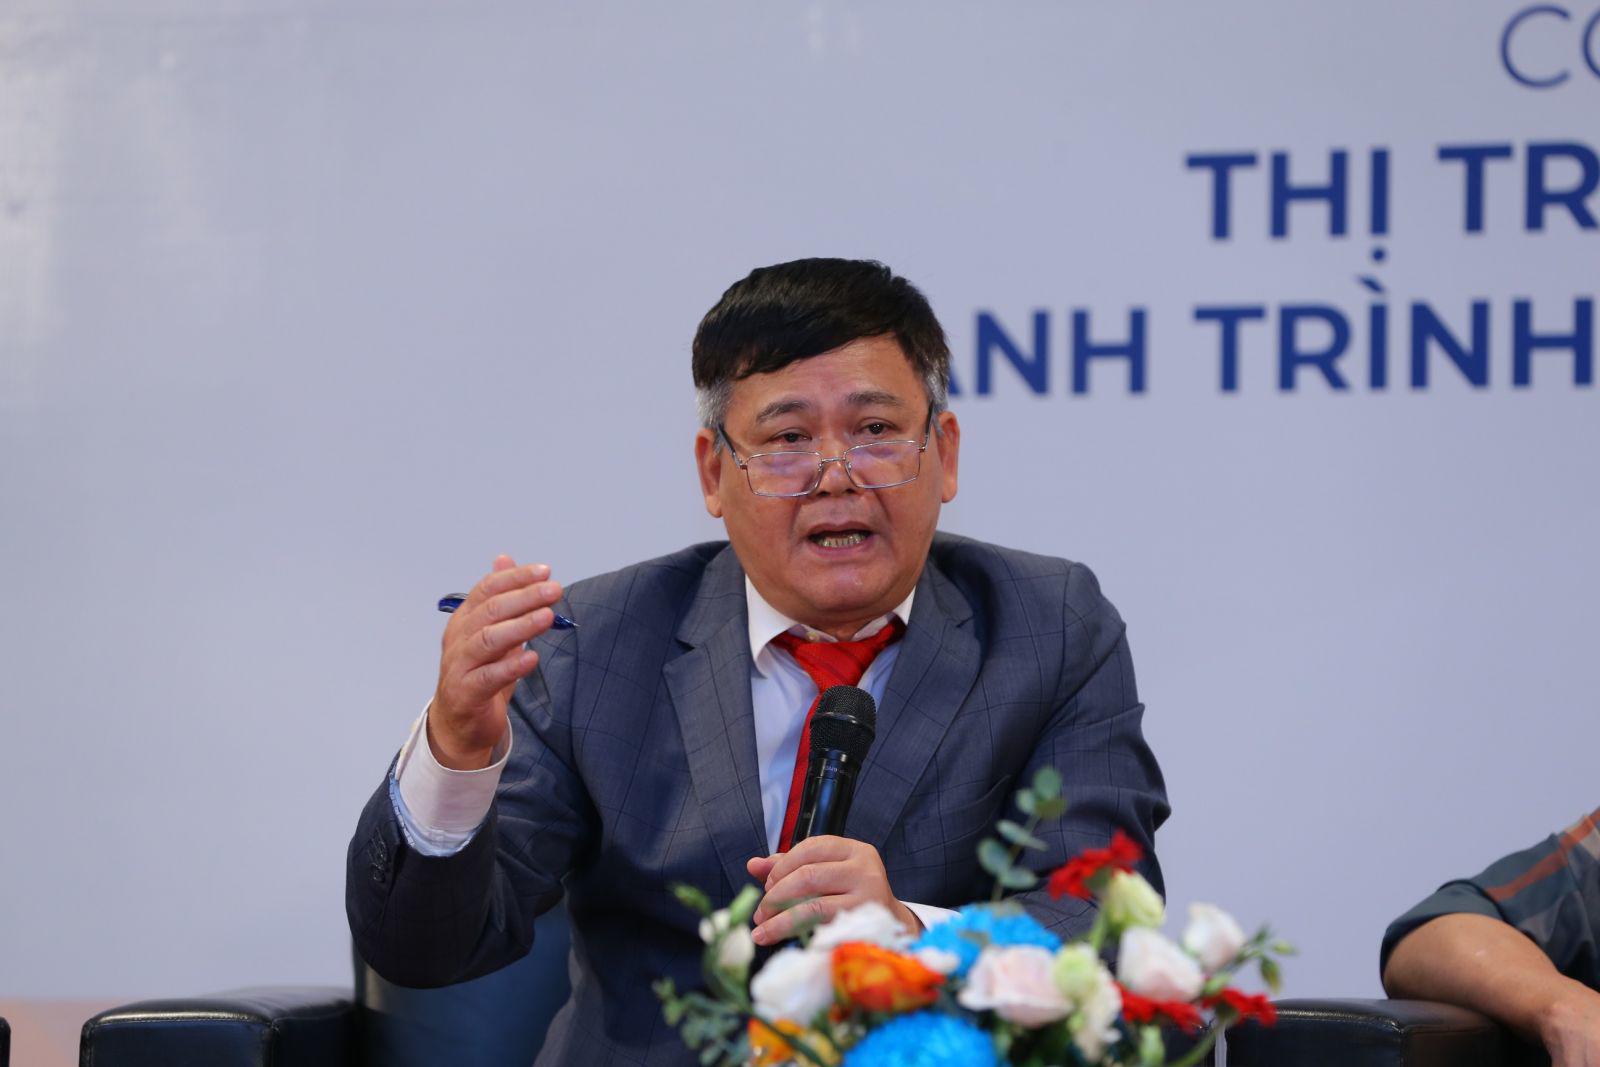 PGS. TS. Trần Kim Chung đánh giá thị trường BĐS hiện nay cơ hội nhiều hơn thách thức